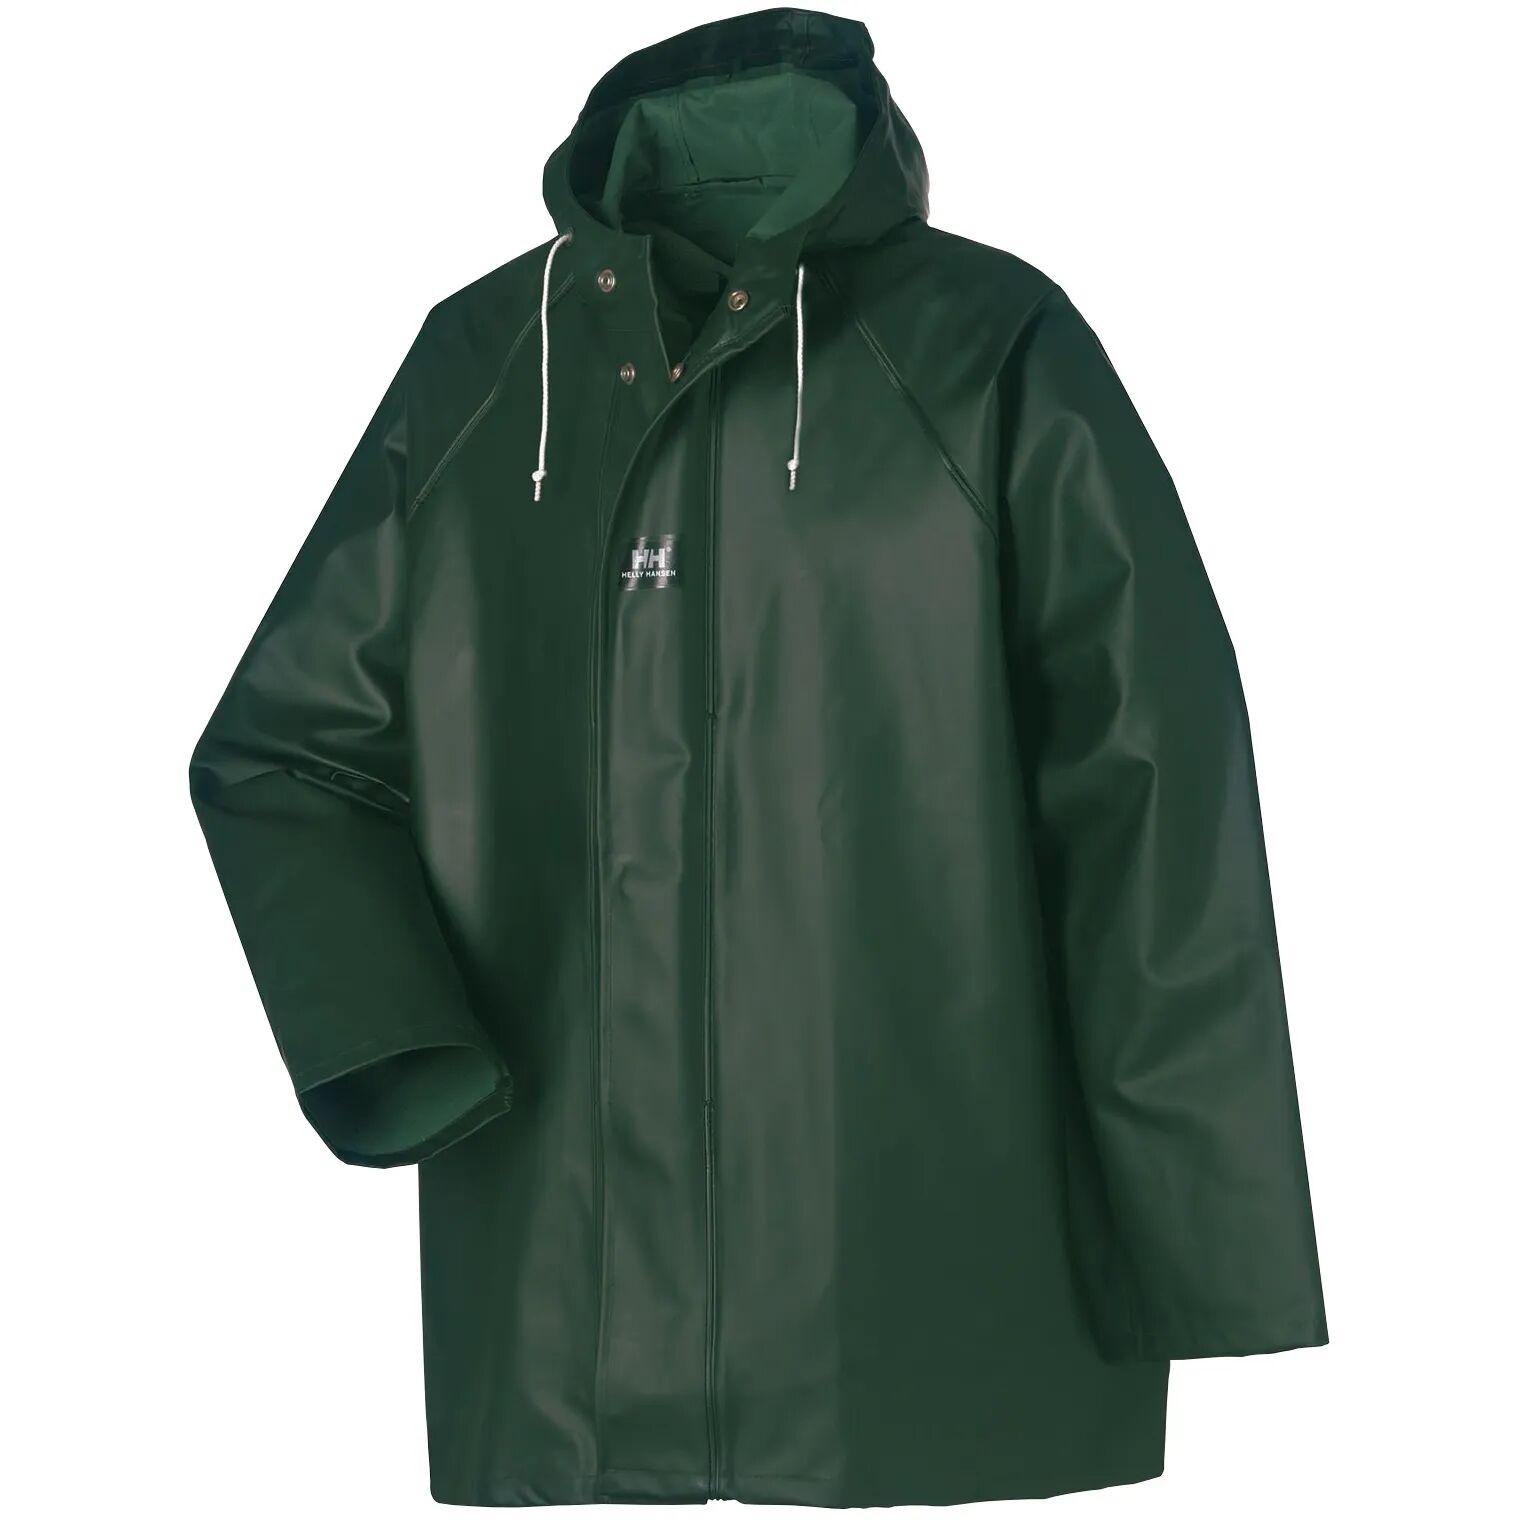 HH Workwear Helly Hansen WorkwearHighliner 100% Cotton Waterproof Jacket Green M